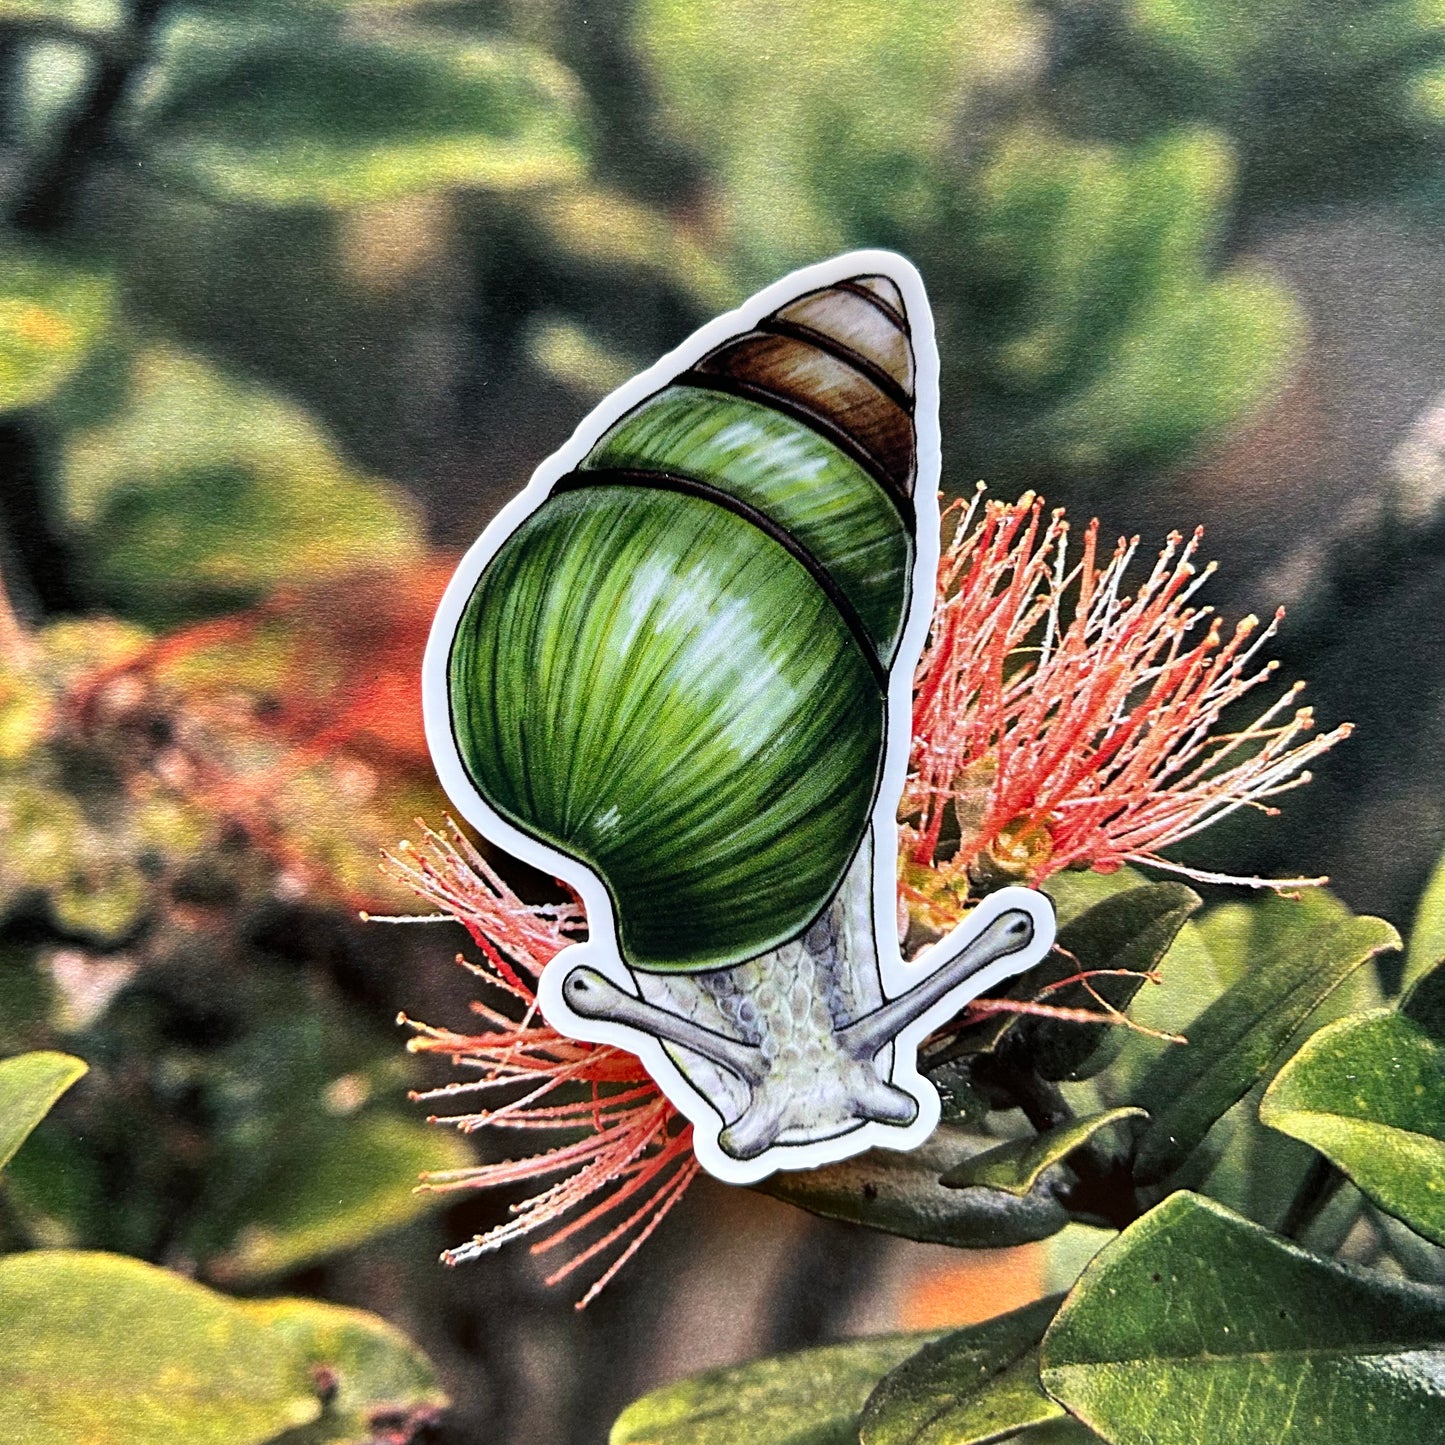 Kāhuli (Achatinella vulpina) sticker